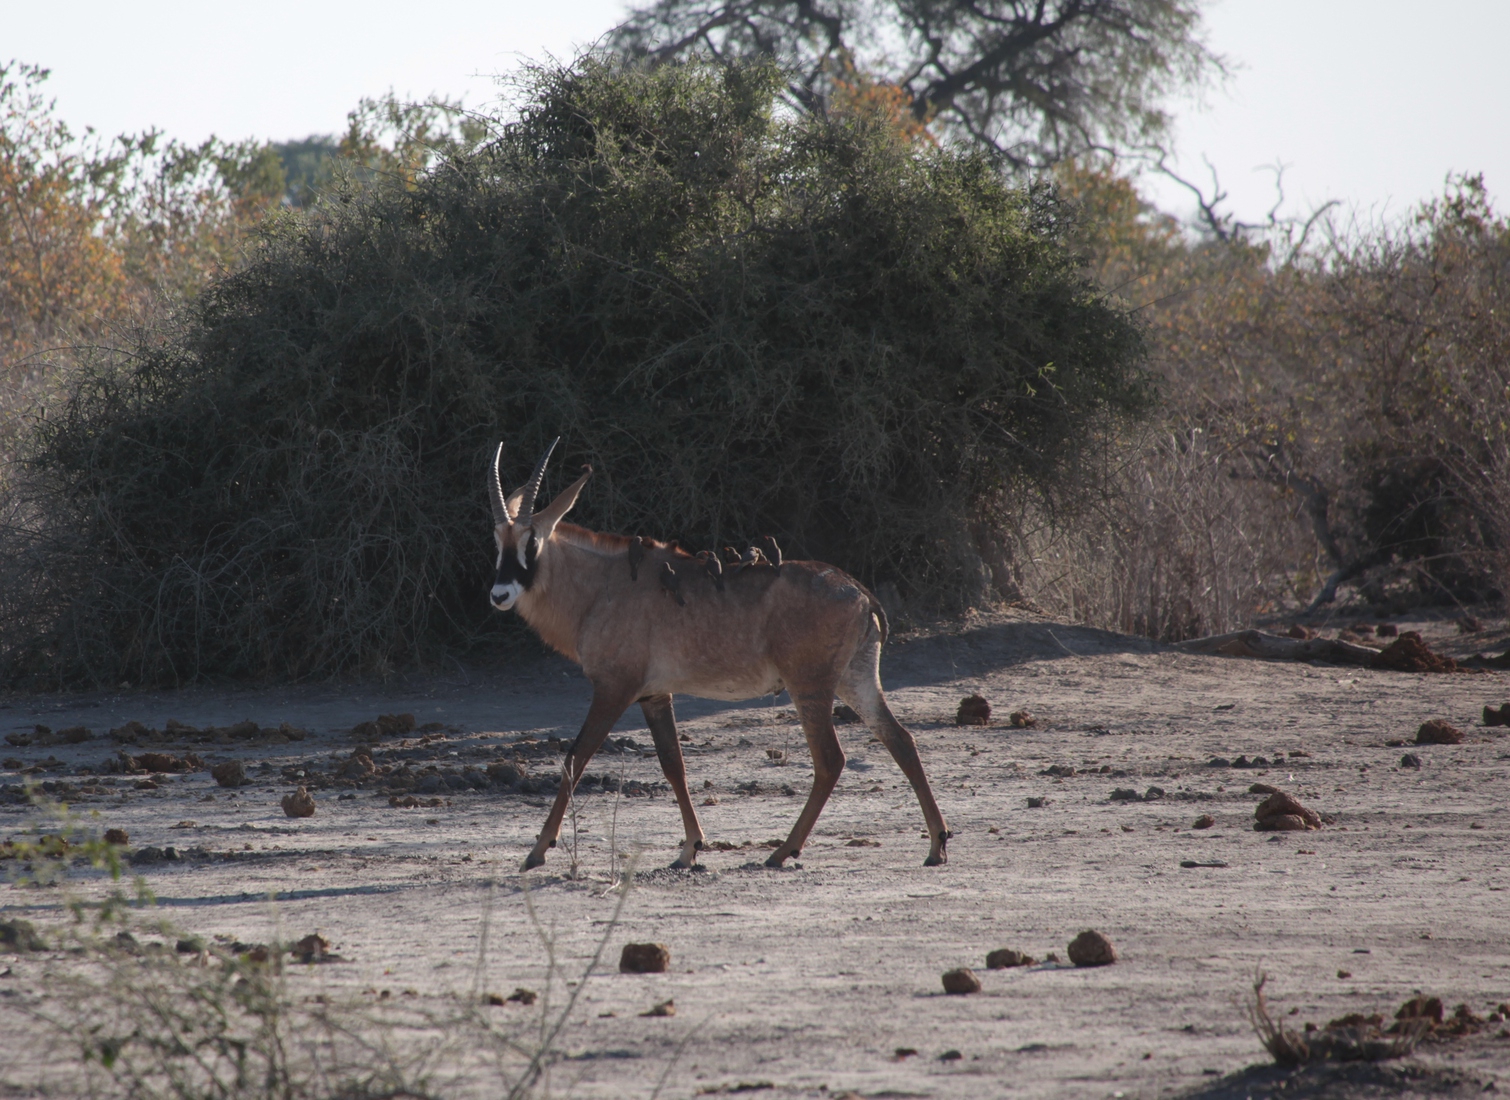 Savuti: Roanantilope (Hippotragus Equinus)